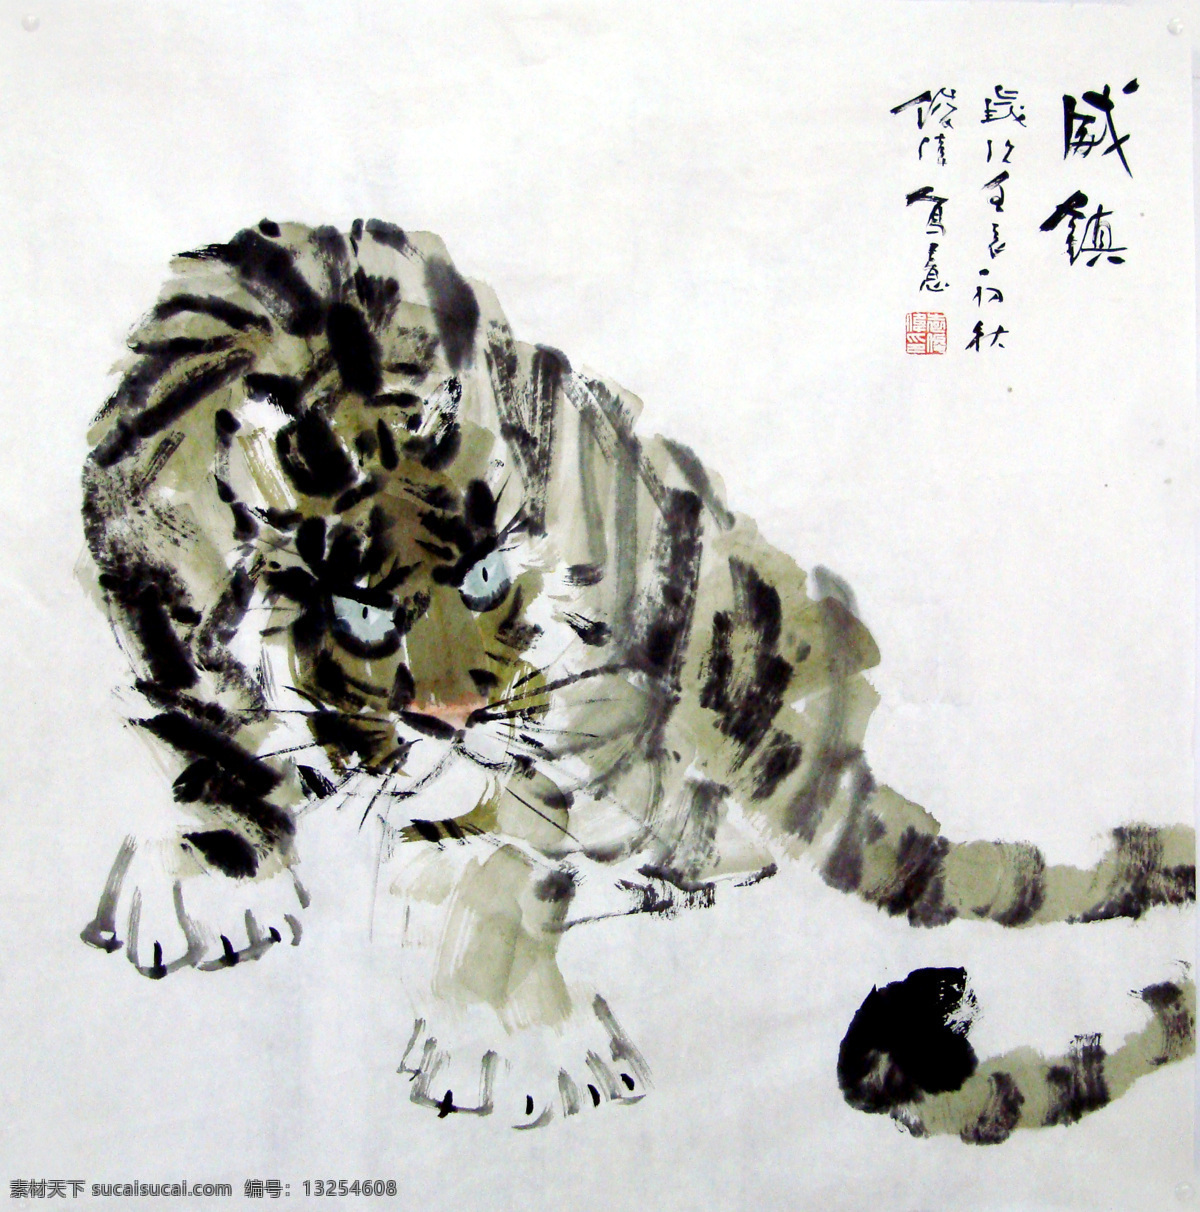 猛虎 国画设计 国画 水墨 动物 山水画 老虎 凶猛 威慑 绘画书法 文化艺术